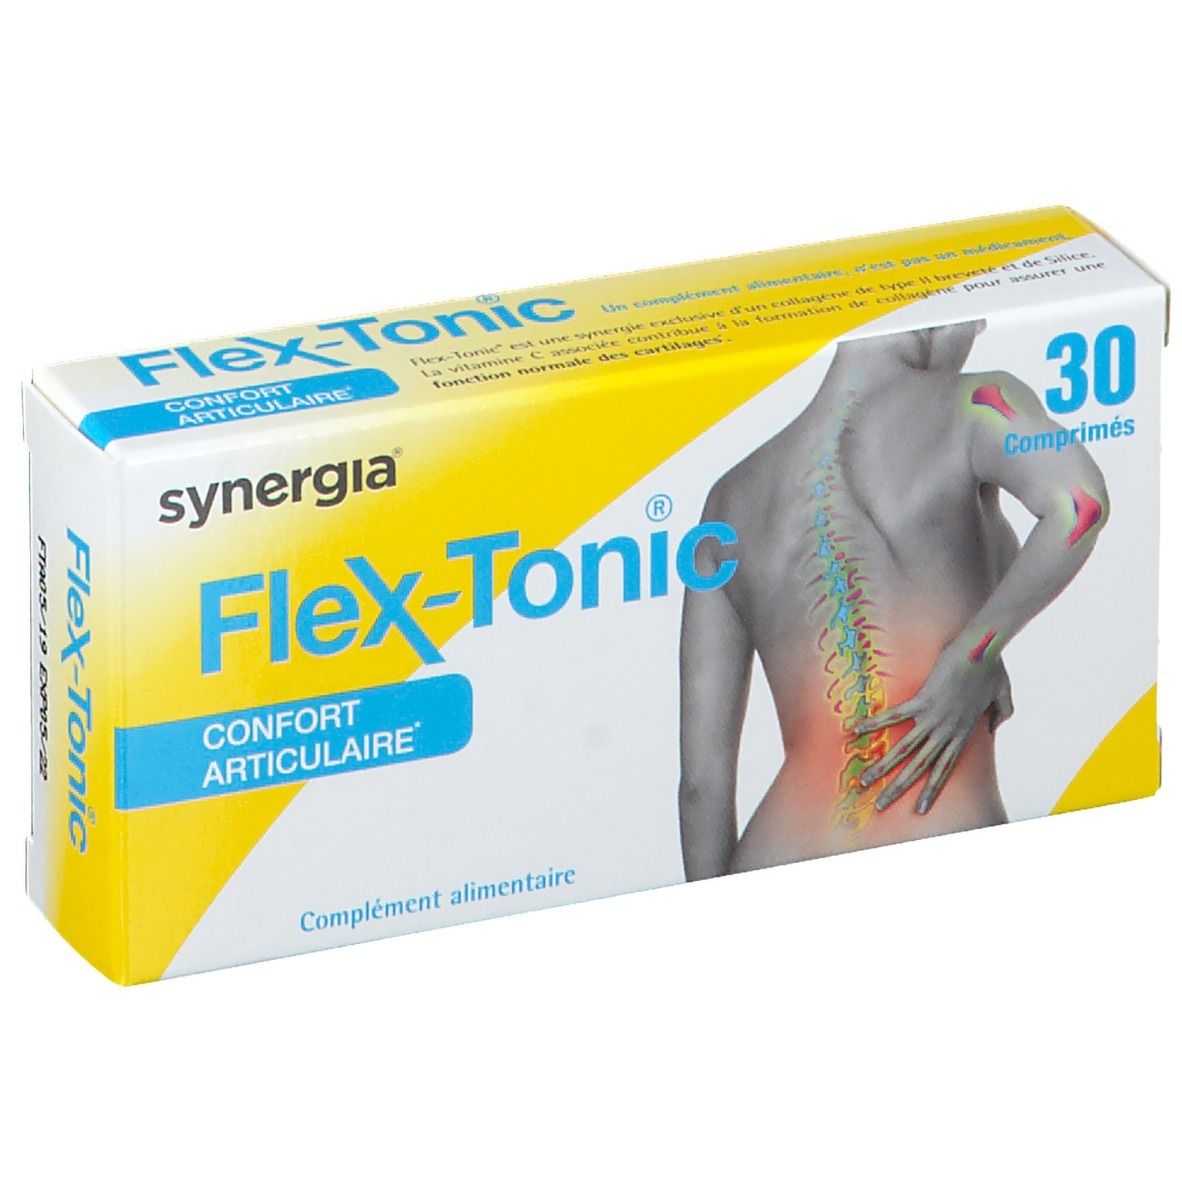 Synergia Flex-Tonic®